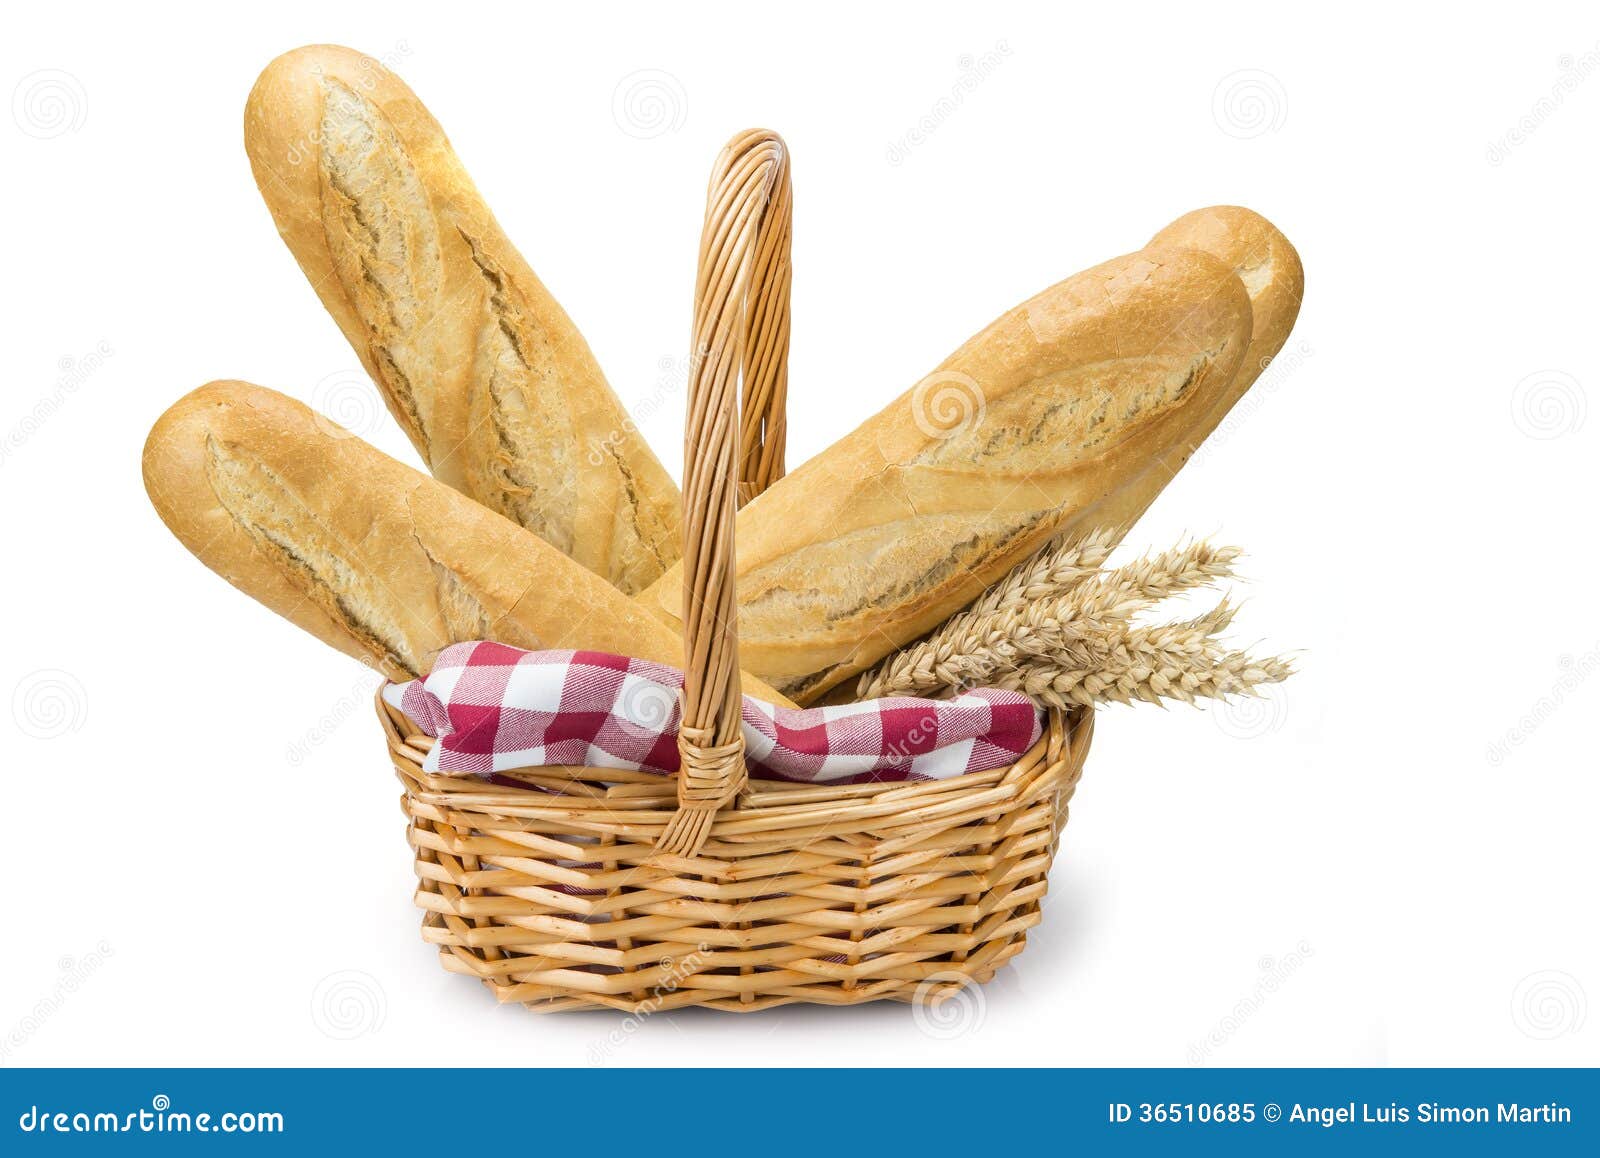 Cesta con pan del trigo imagen de archivo. Imagen de cereal - 36510685